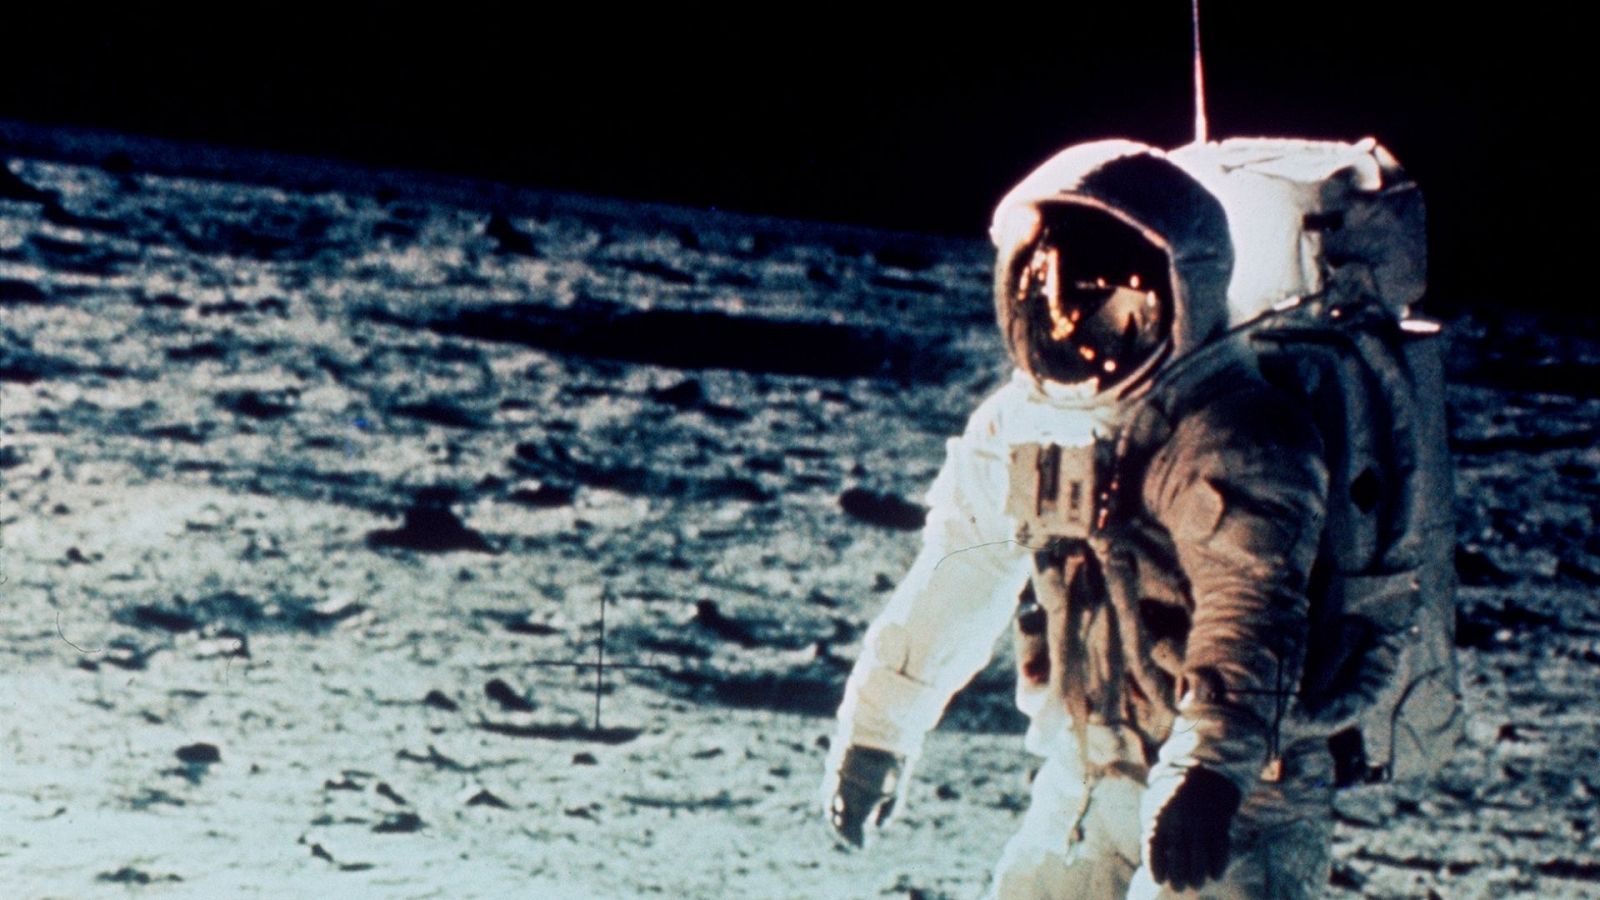 Neil Armstrong, comandante de la nave Apolo XI, regresa al módulo de exploración "Eagle" después de dar el primer paseo sobre la Luna